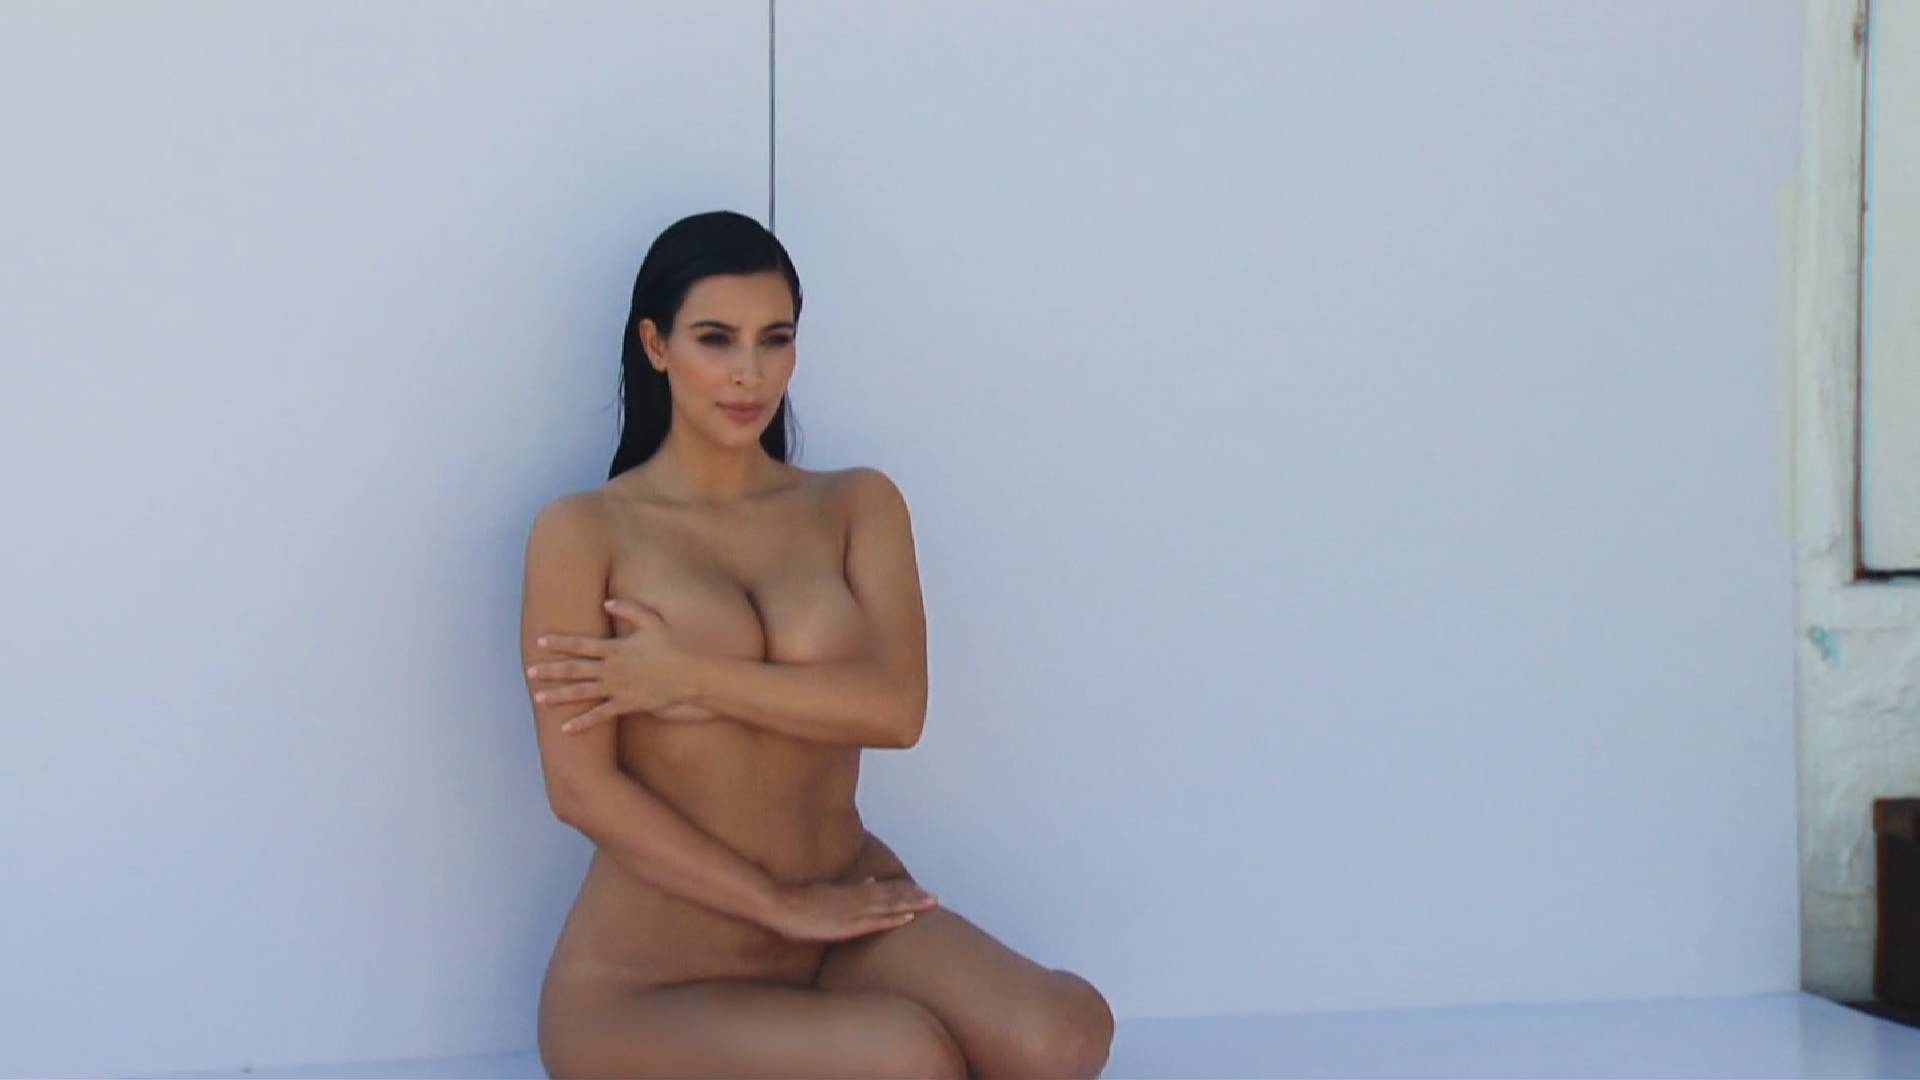 Kim Kardashian West nude photo